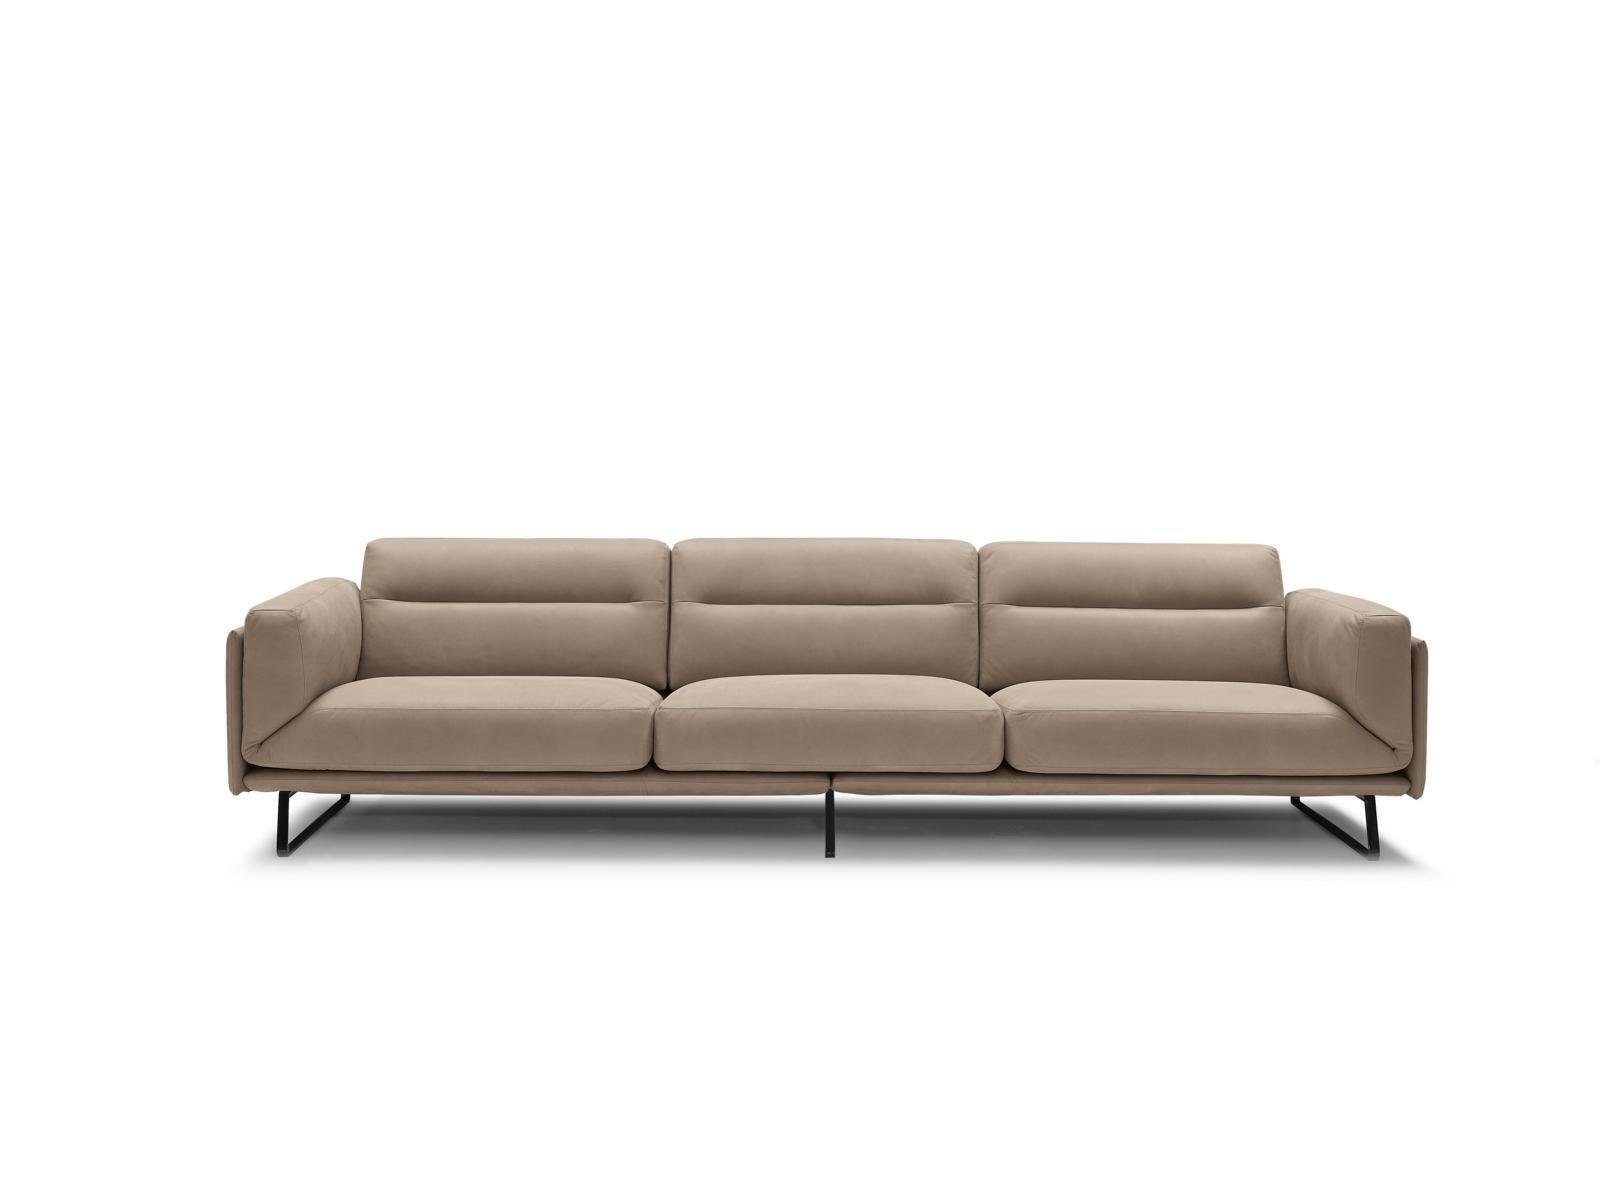 JVmoebel 4-Sitzer Sofa 4 Sitzer Ledersofas Luxus Design Couch Beige Polster Viersitzer